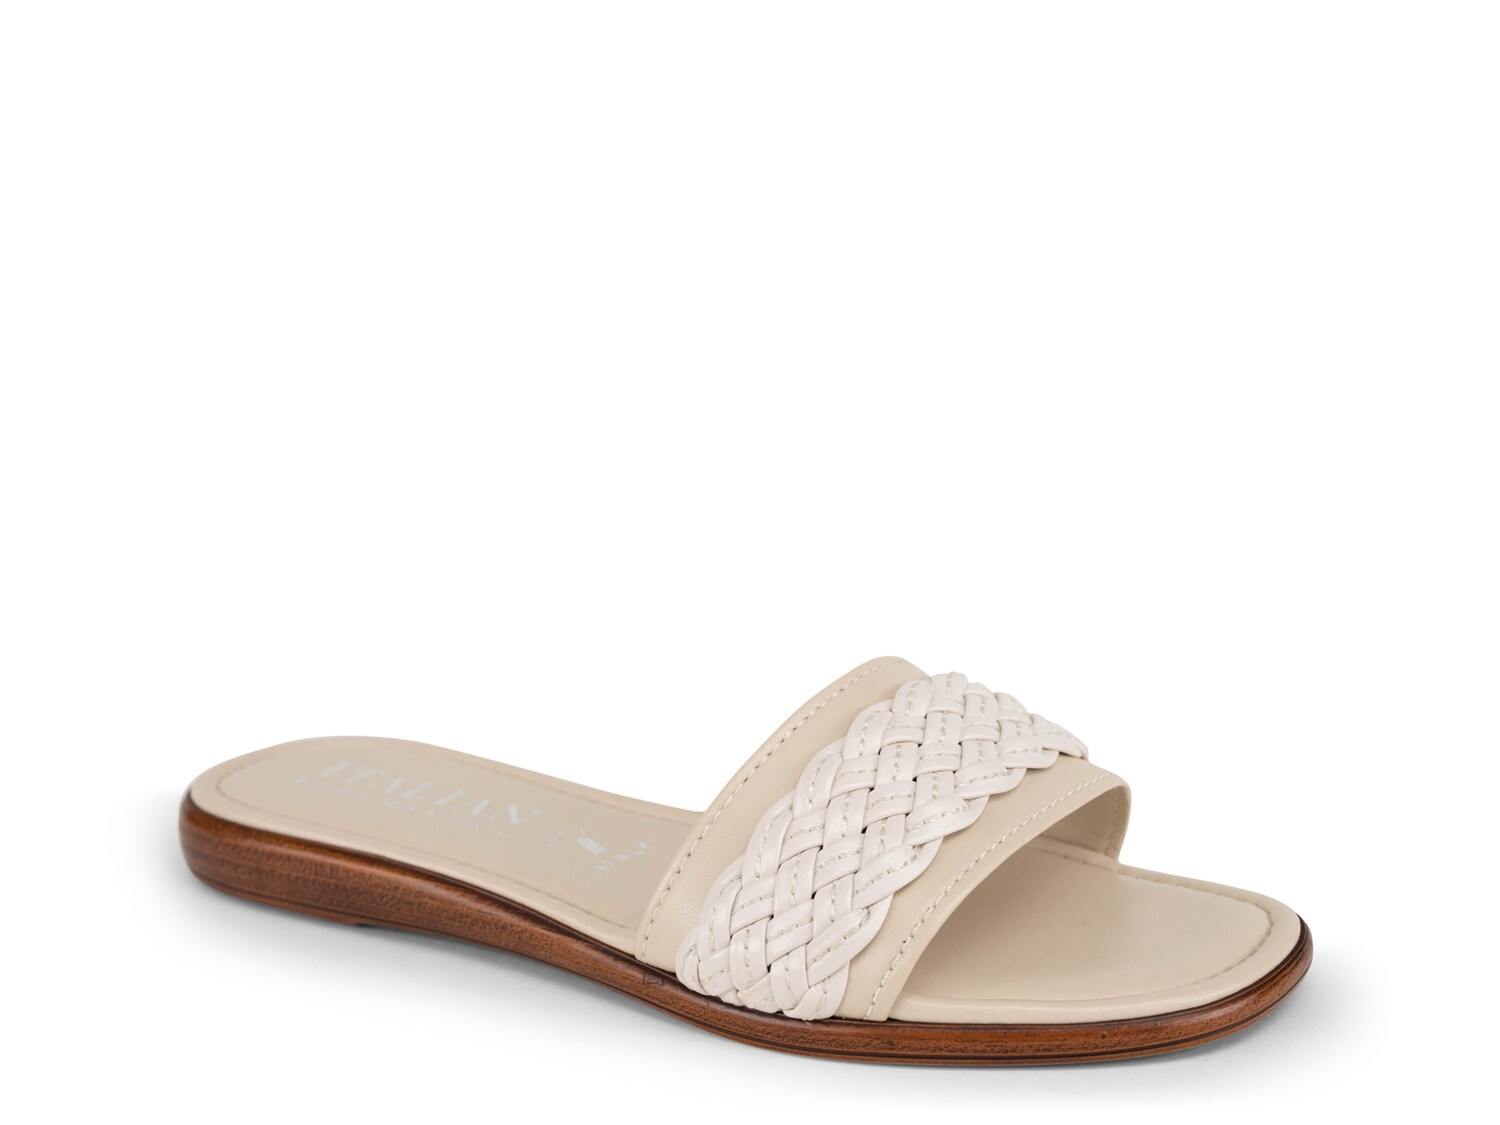 Сандалии Italian Shoemakers Lorelei, бежевый туфли женские на танкетке толстая танкетка открытый носок пляжные шлепанцы сандалии в римском стиле модная летняя обувь